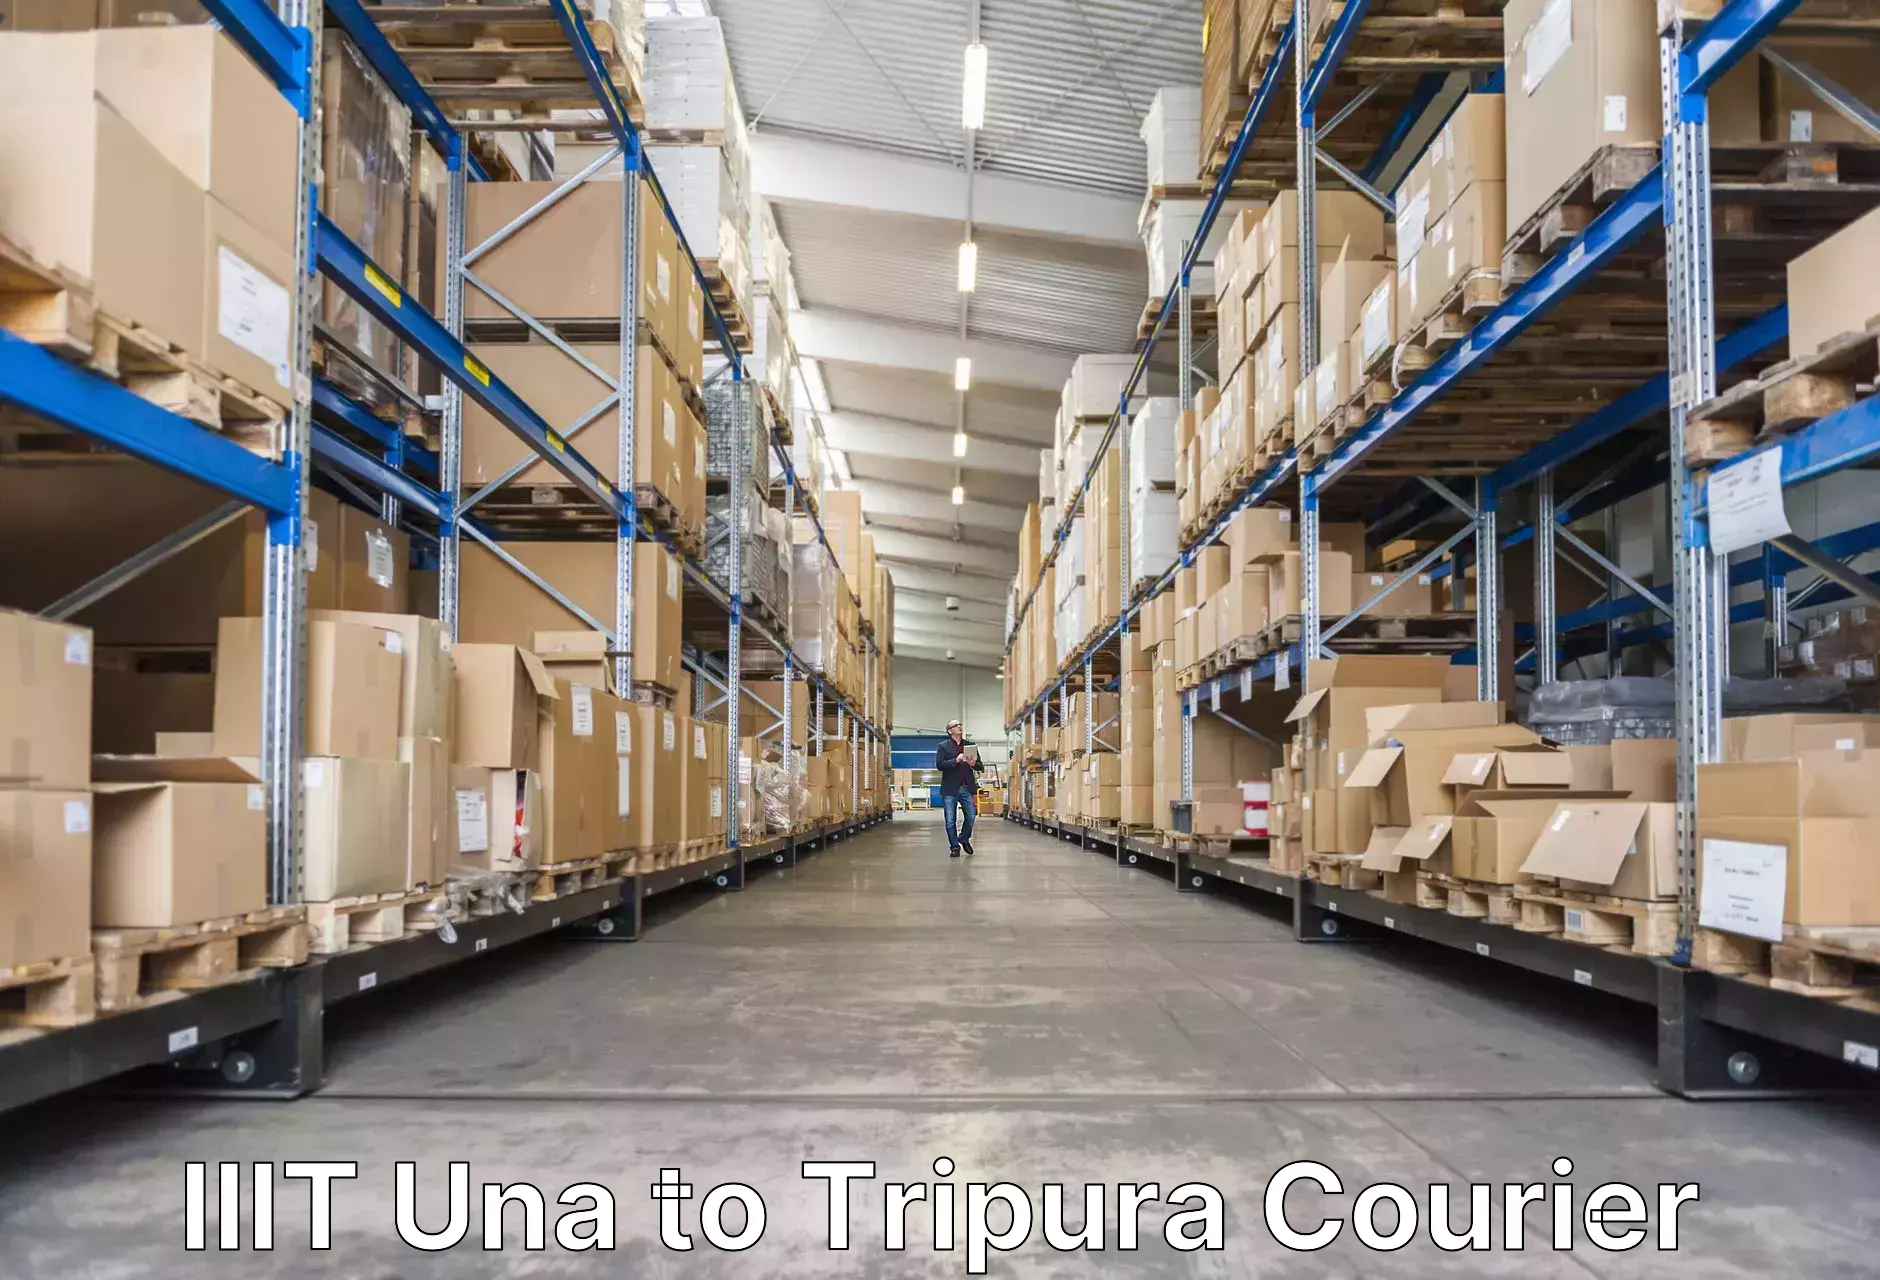 Luggage shipping strategy IIIT Una to Sonamura